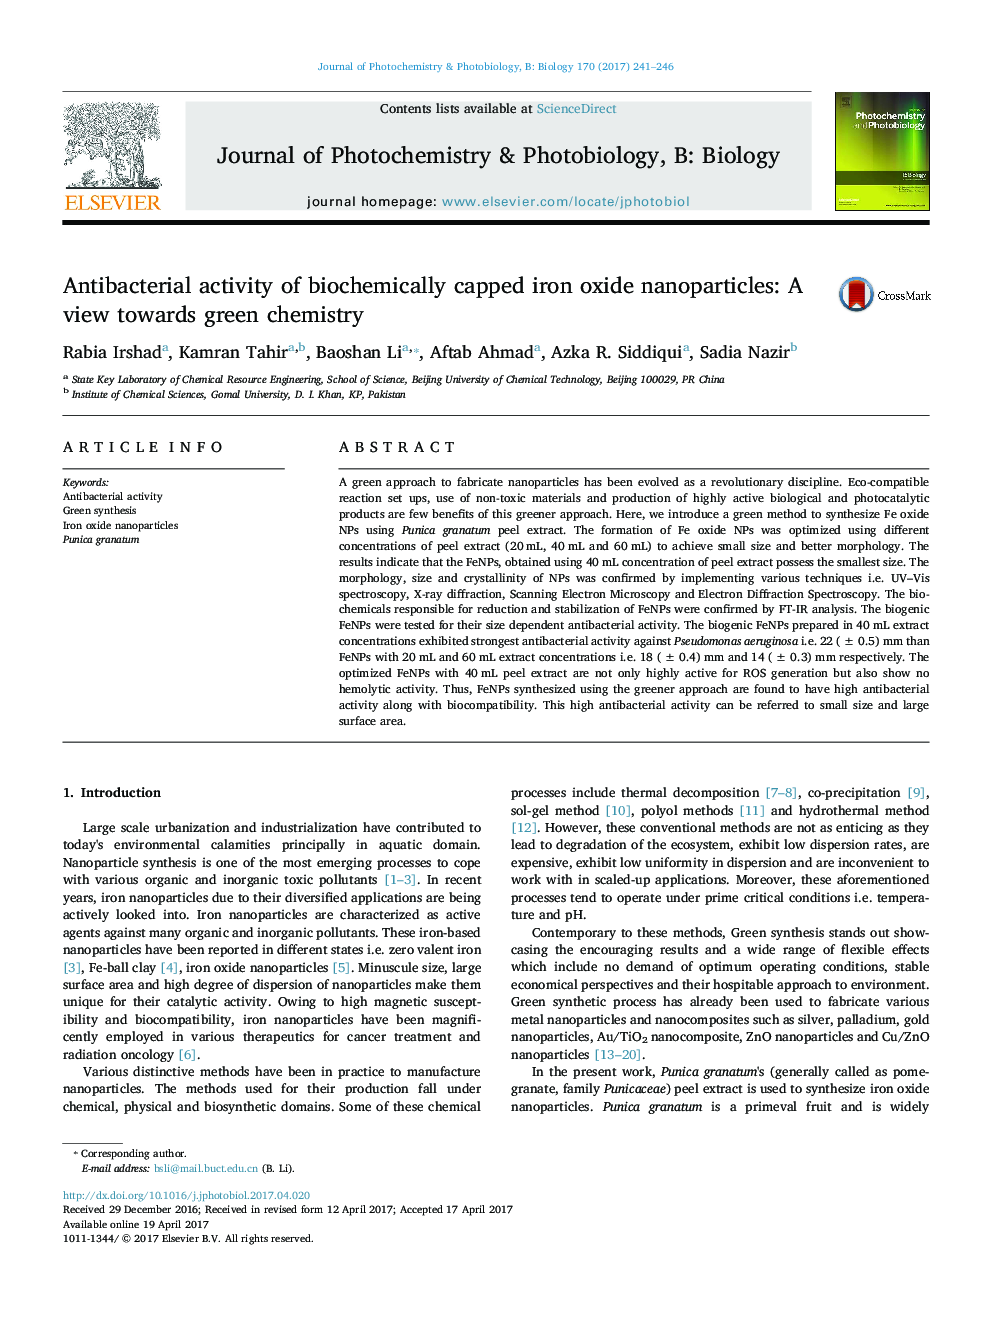 فعالیت آنتی باکتریال نانوذرات اکسید آهن با غلظت بیوشیمیایی: دیدگاه نسبت به مواد شیمیای سبز 